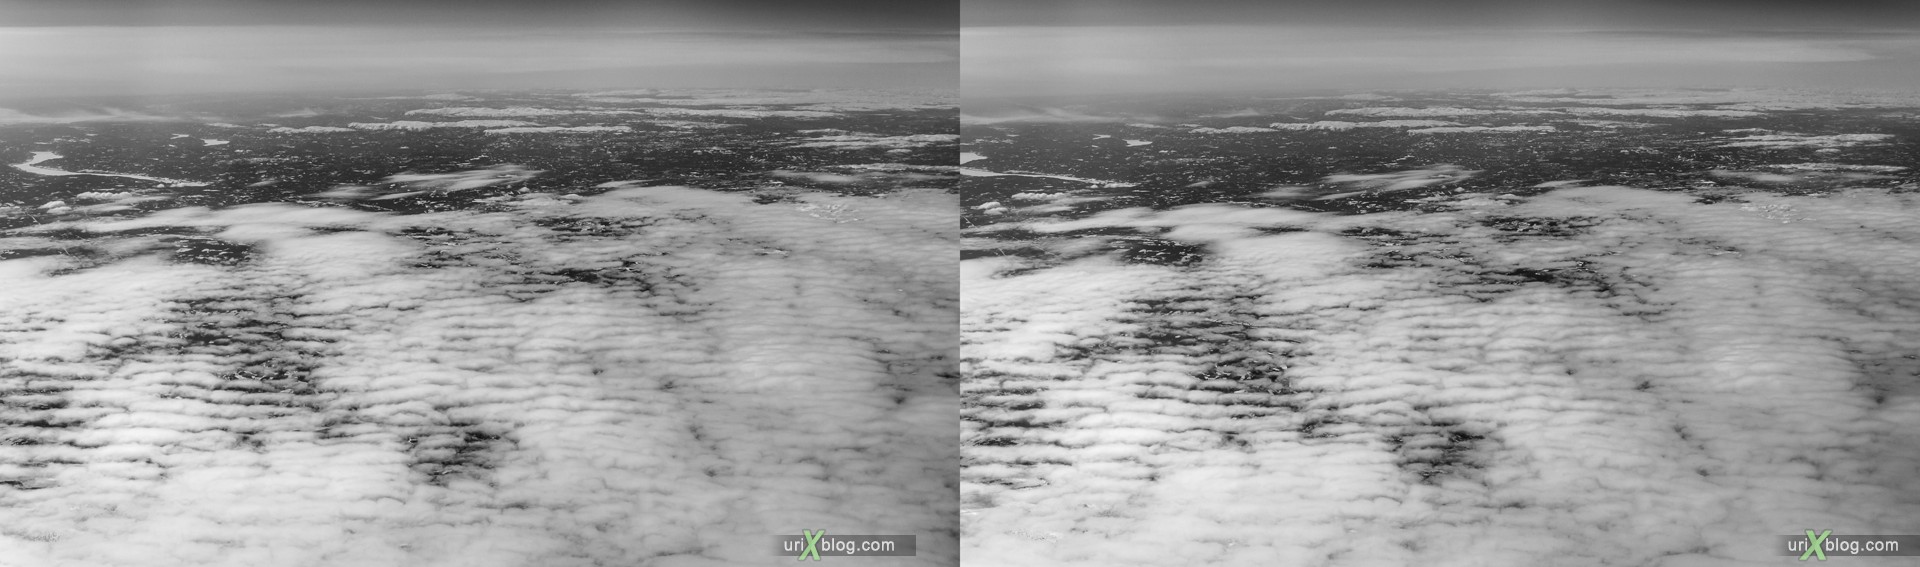 2013, Норвегия, панорама, самолёт, чёрно-белое, чб, снег, лёд, облака, горизонт, 3D, перекрёстные стереопары, стерео, стереопара, стереопары